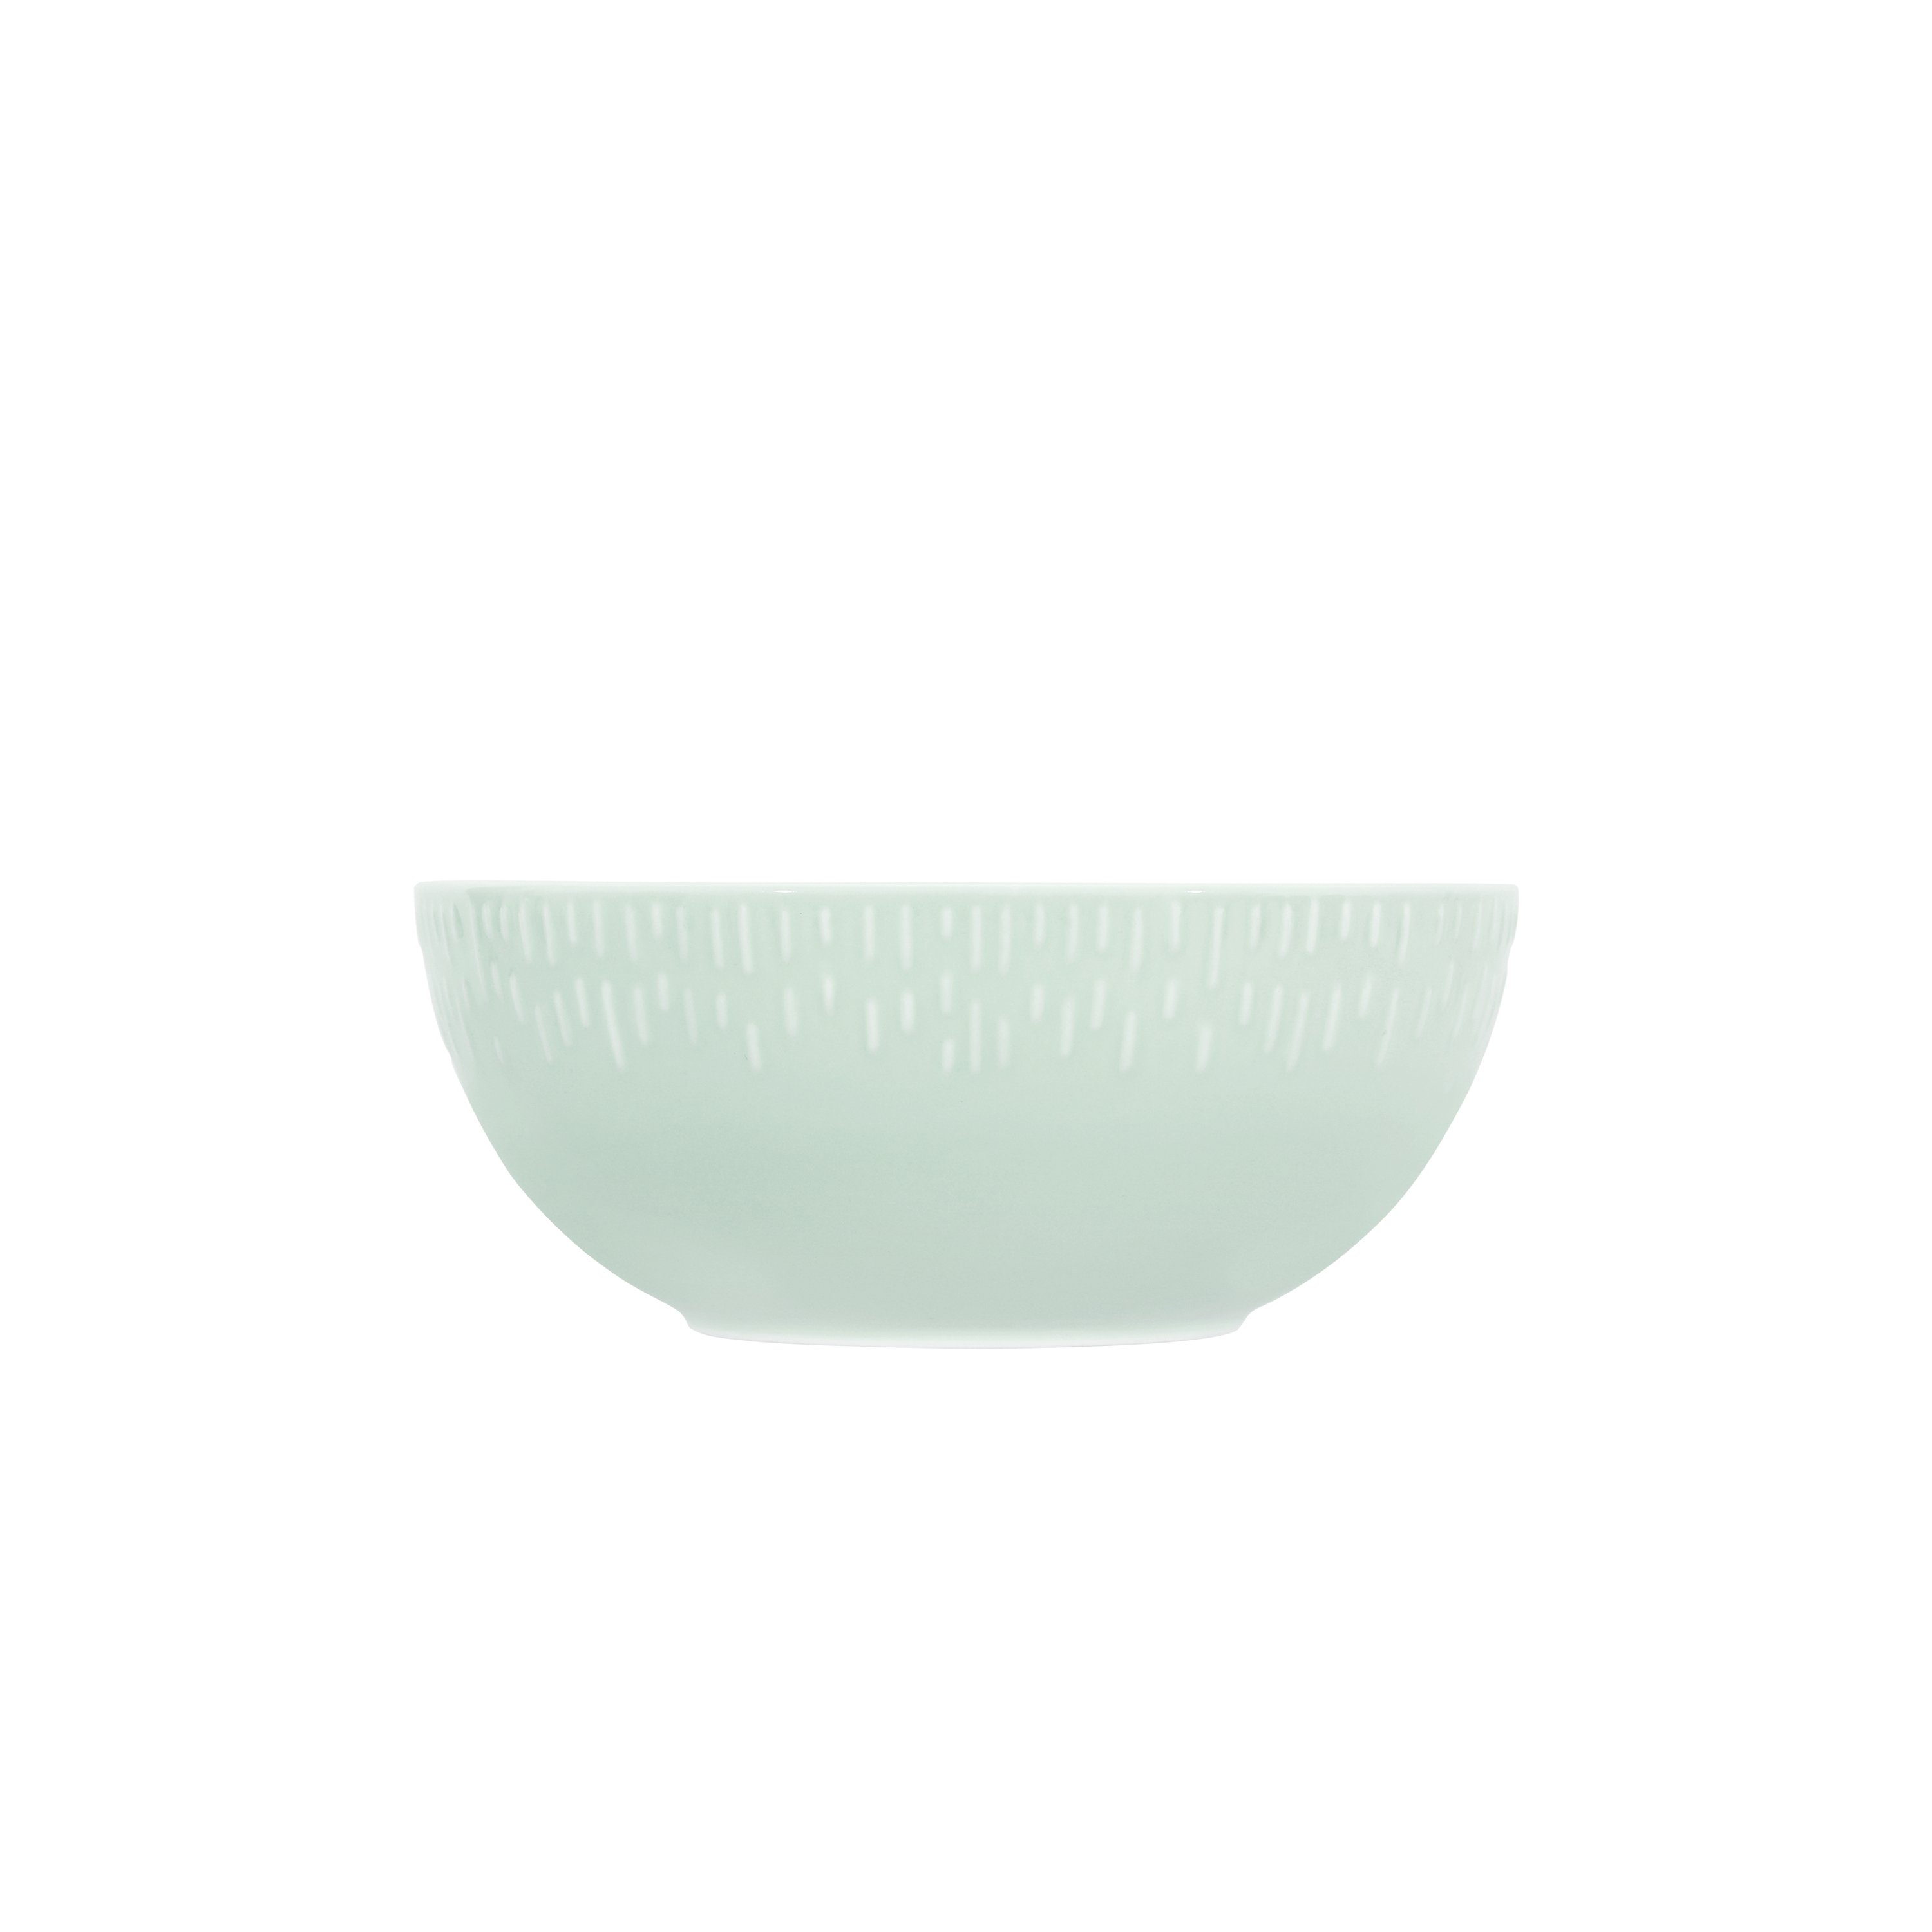 Aida - Life in colour - Confetti - Pistachio saladbowl w/relief porcelain (13490) - Hjemme og kjøkken